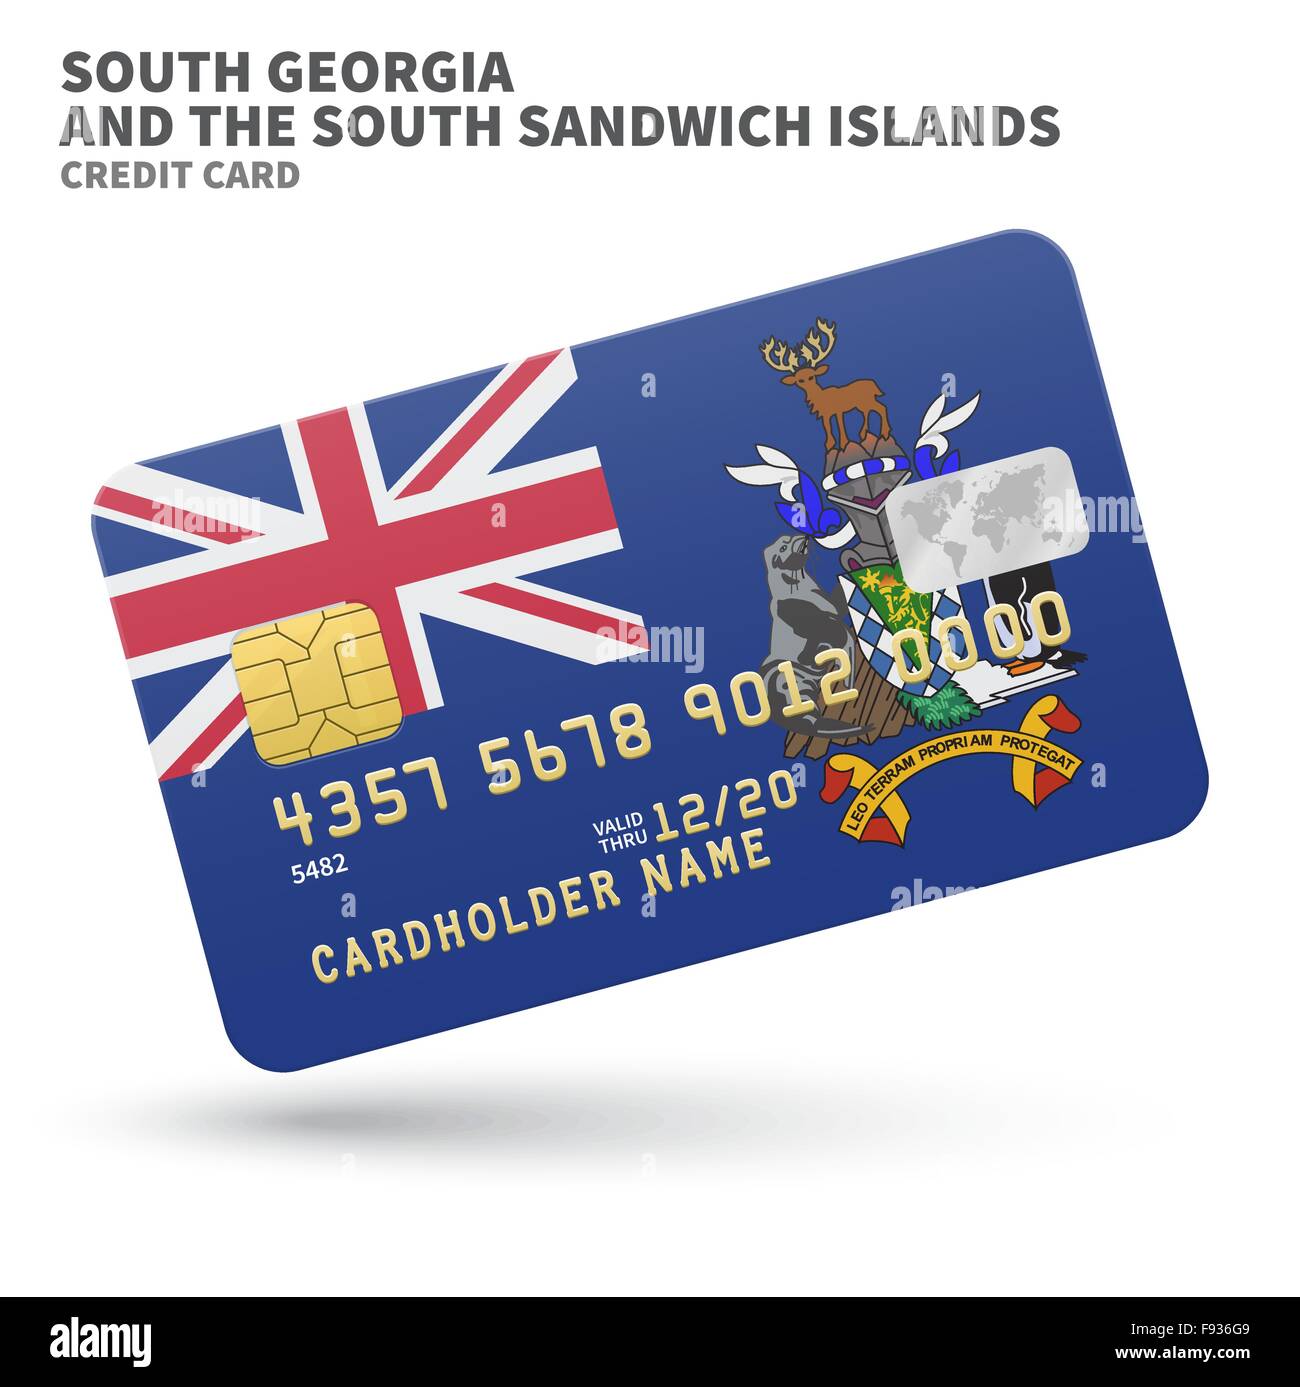 Kreditkarte mit Süd-Georgien und Sandwich-Inseln Flagge Hintergrund für Bank, Präsentationen, Business. Isoliert auf weiss Stock Vektor